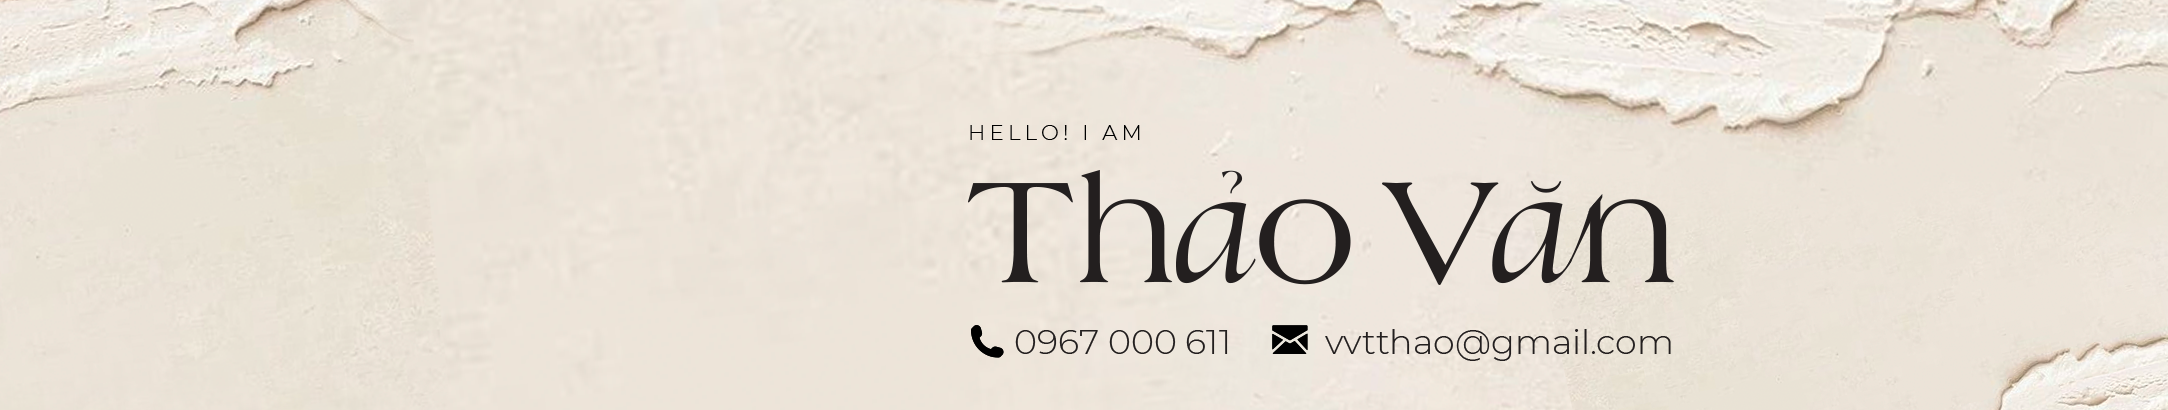 Thao Van profil başlığı